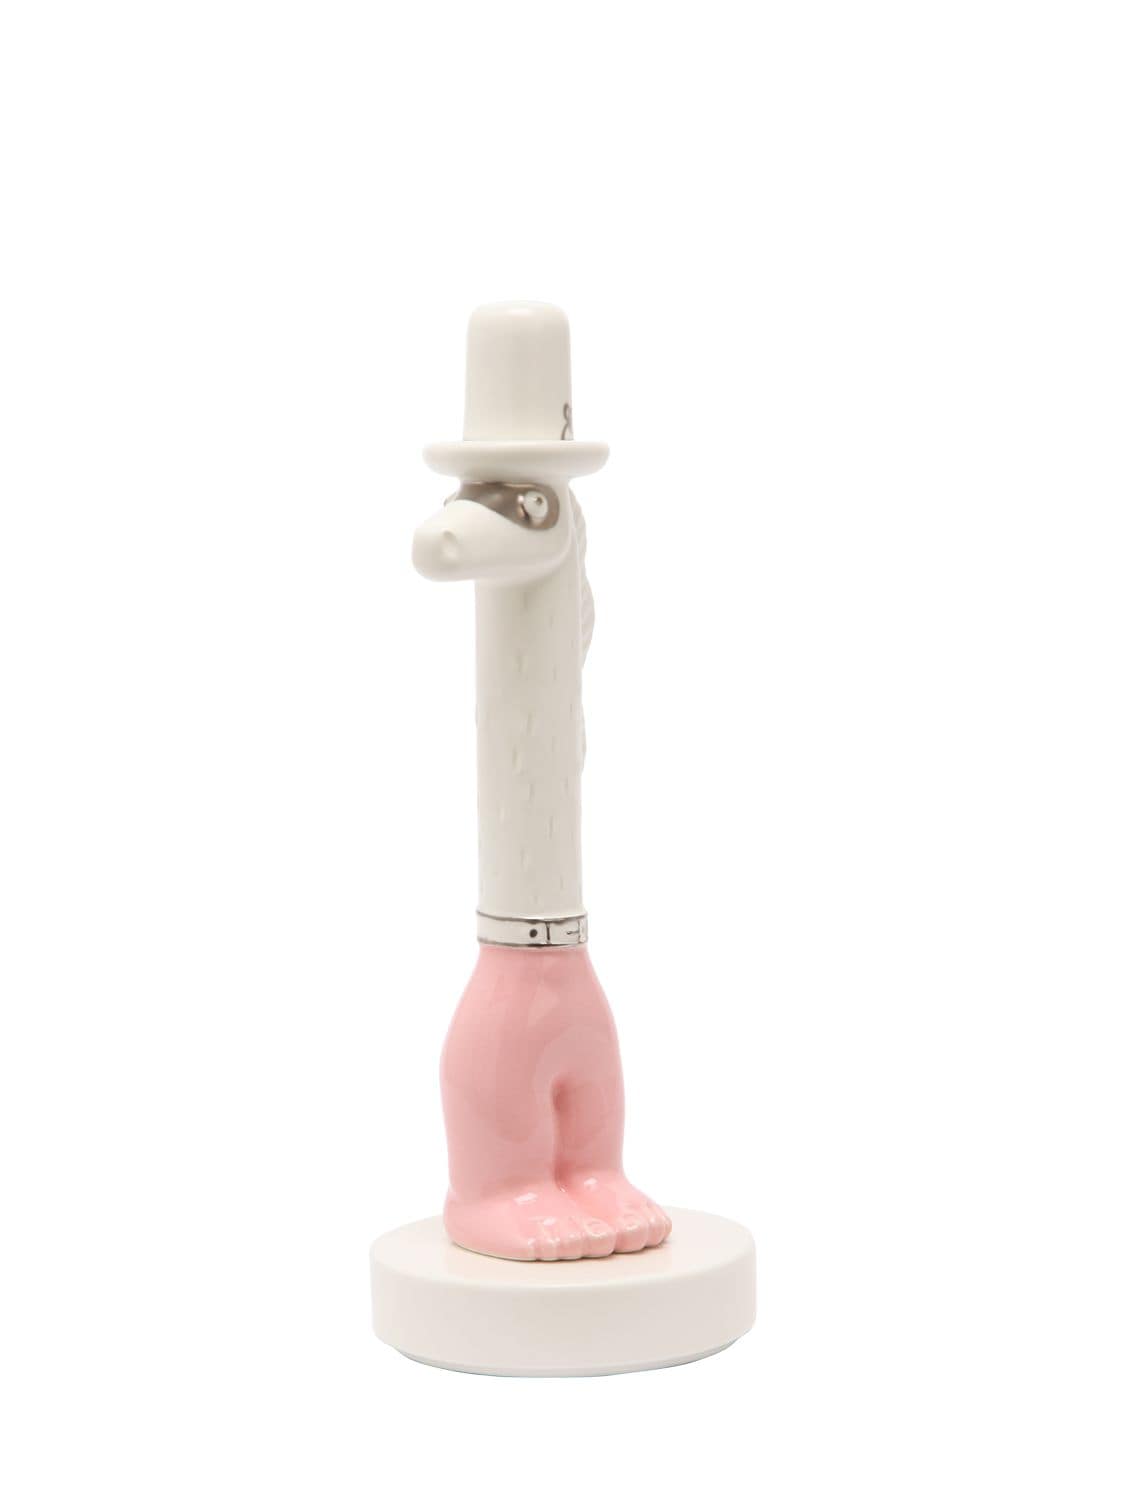 Bosa Calo Ceramic Figurine In White,pink